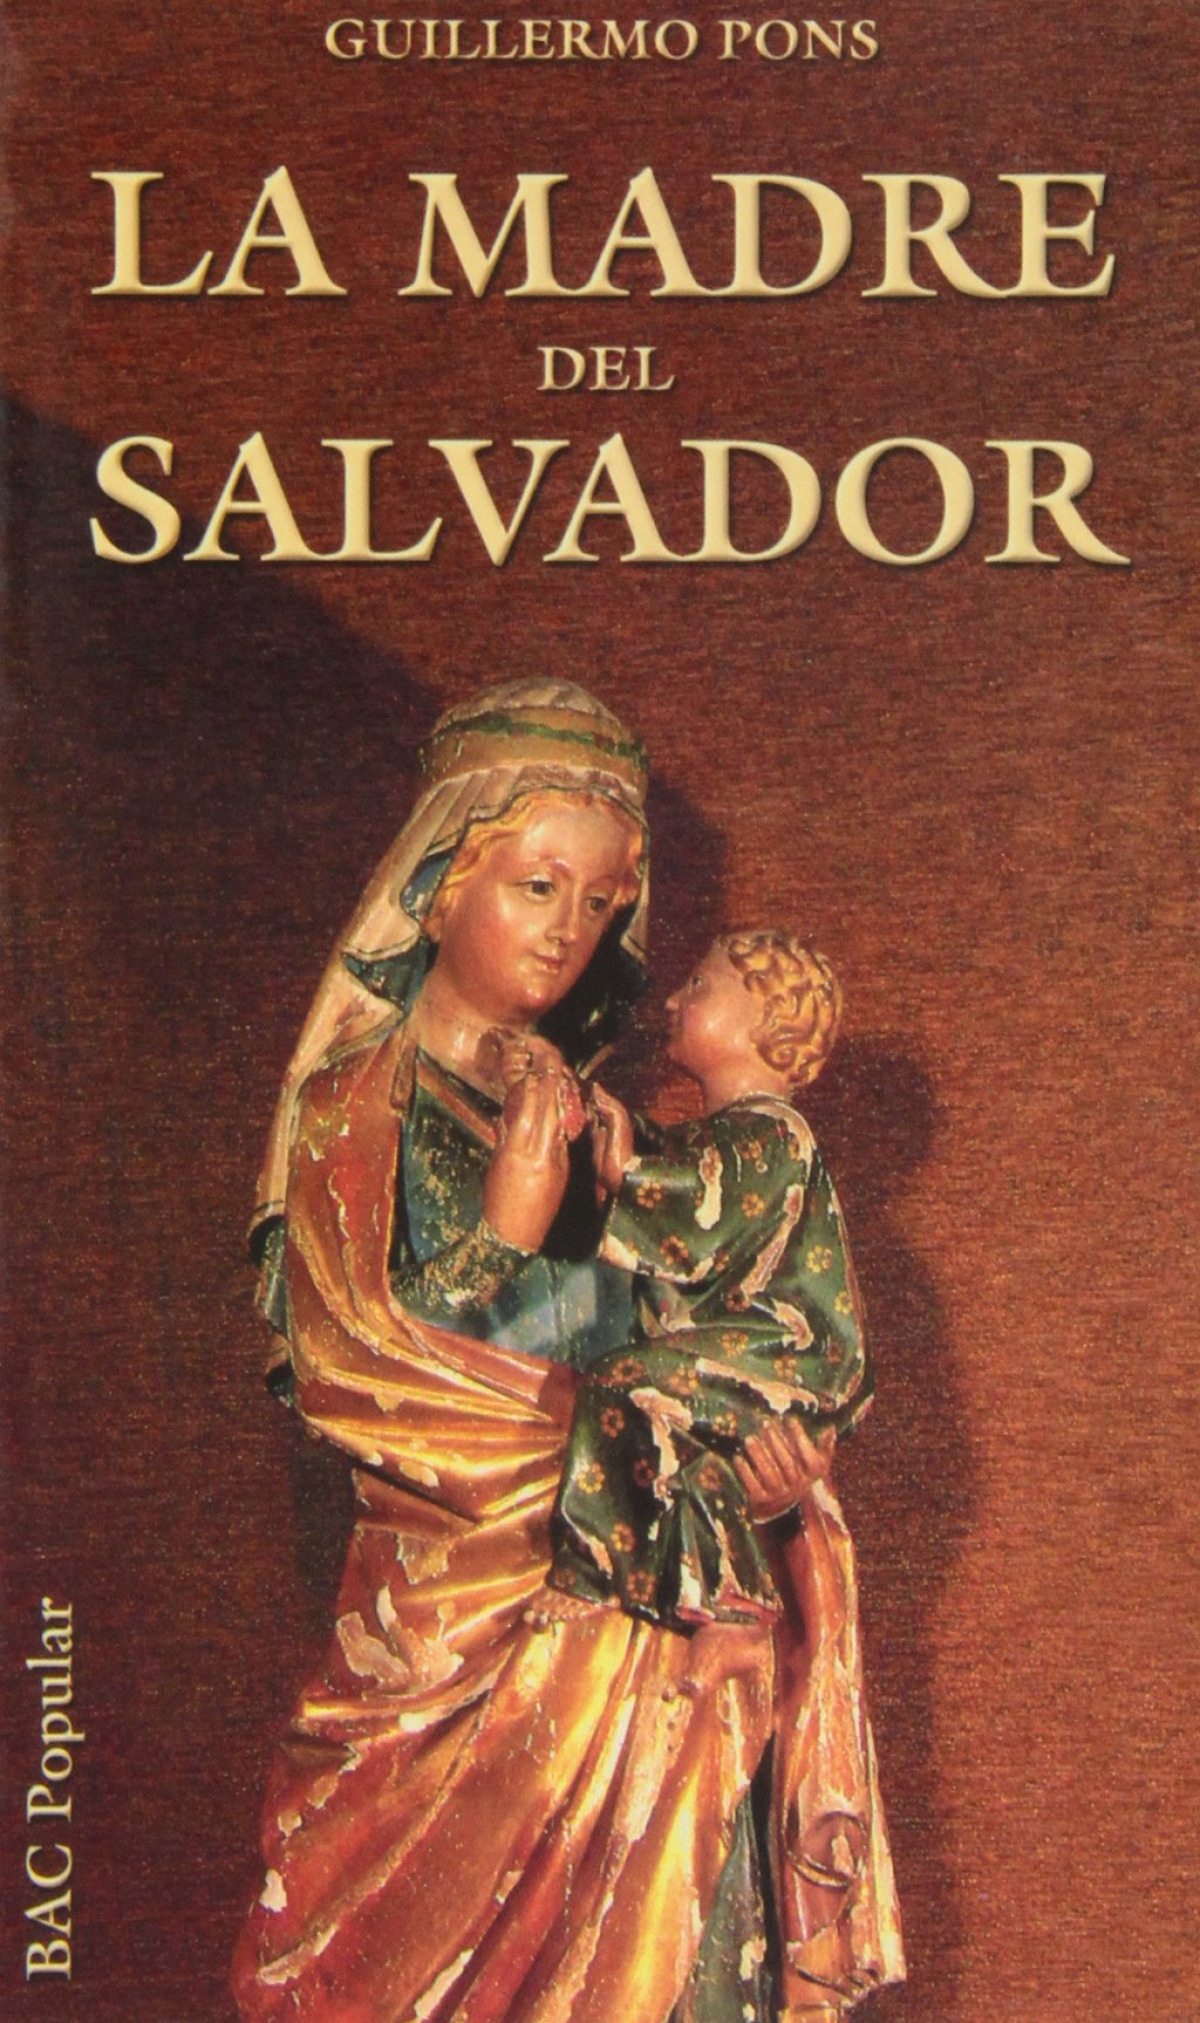 La madre del salvador - Pons, Guillermo